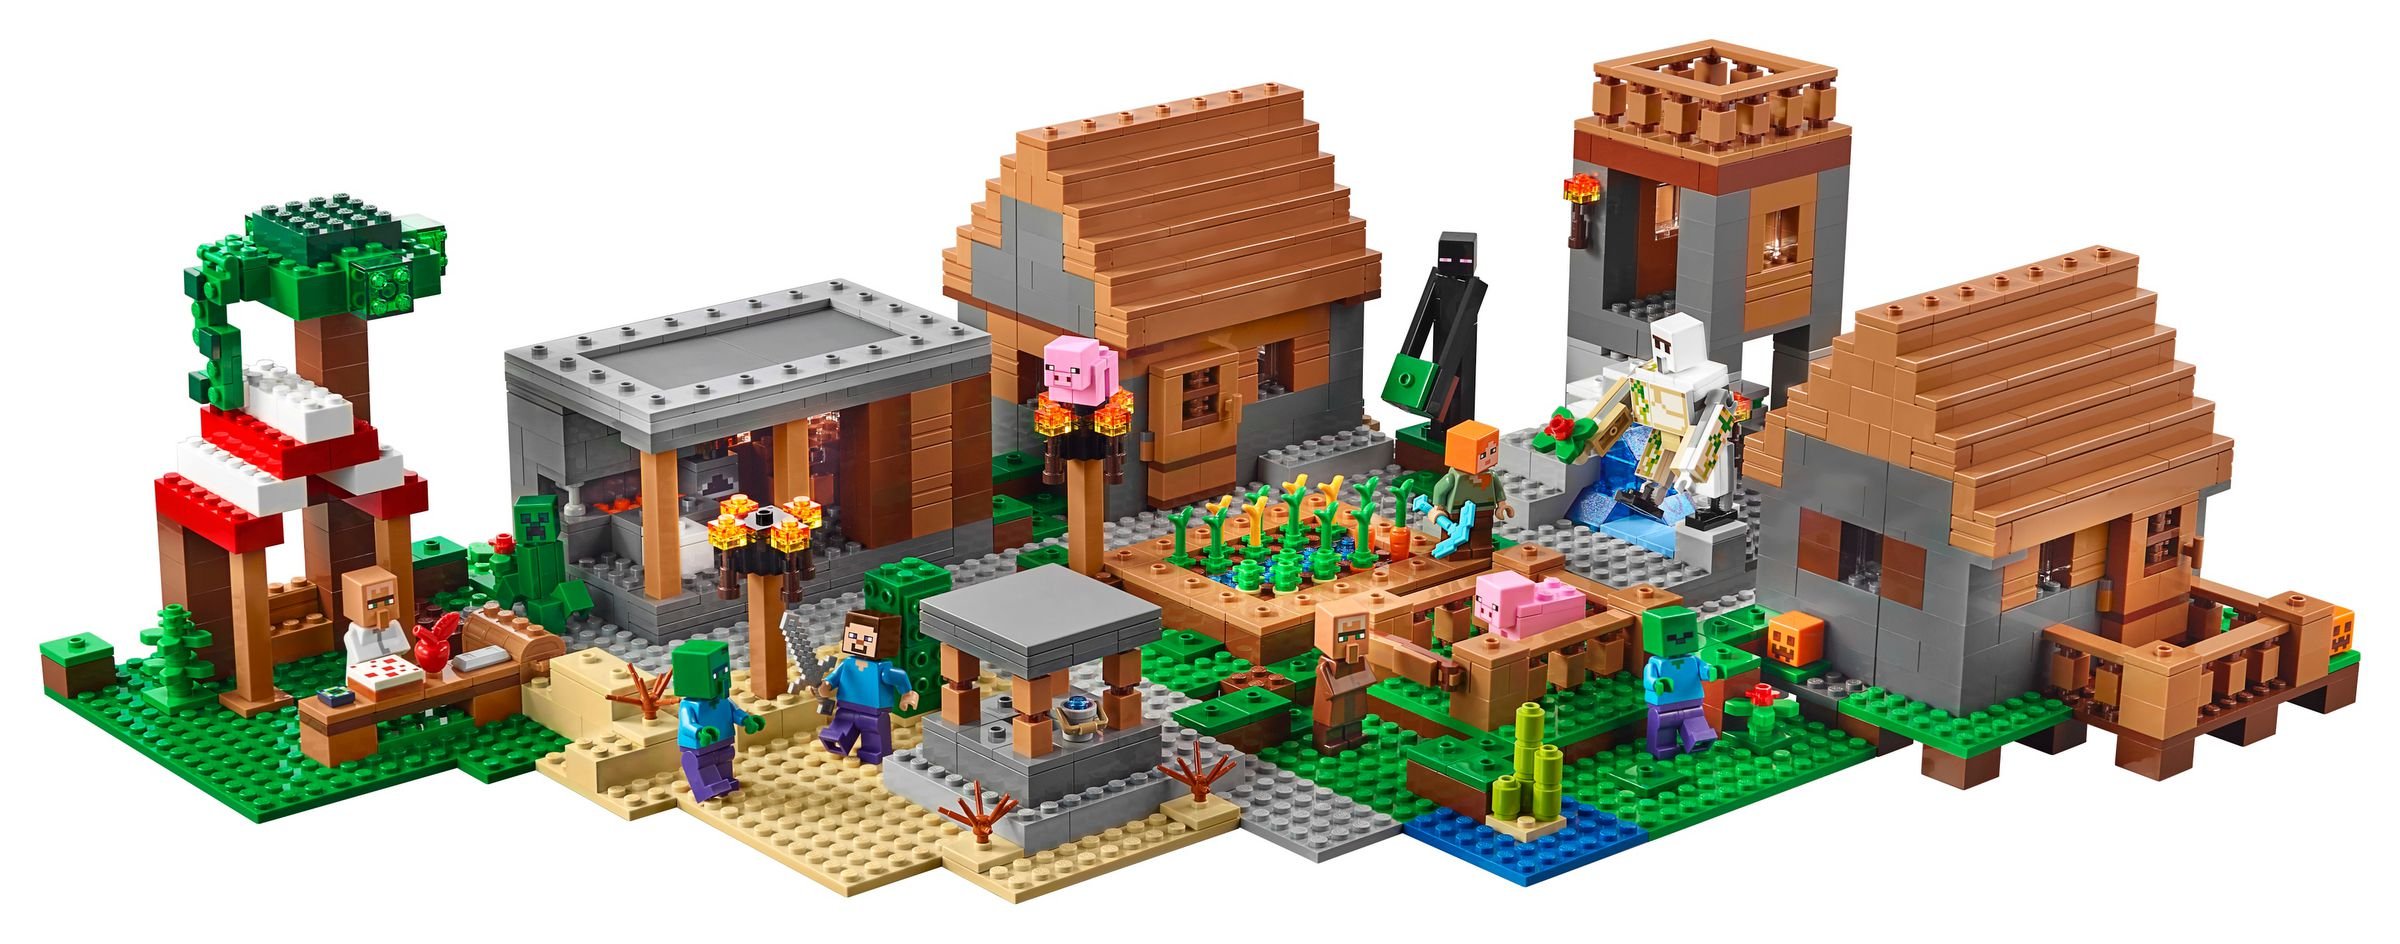 LEGO Minecraft 21128 Das Dorf LEGO_21128_alt2.jpg